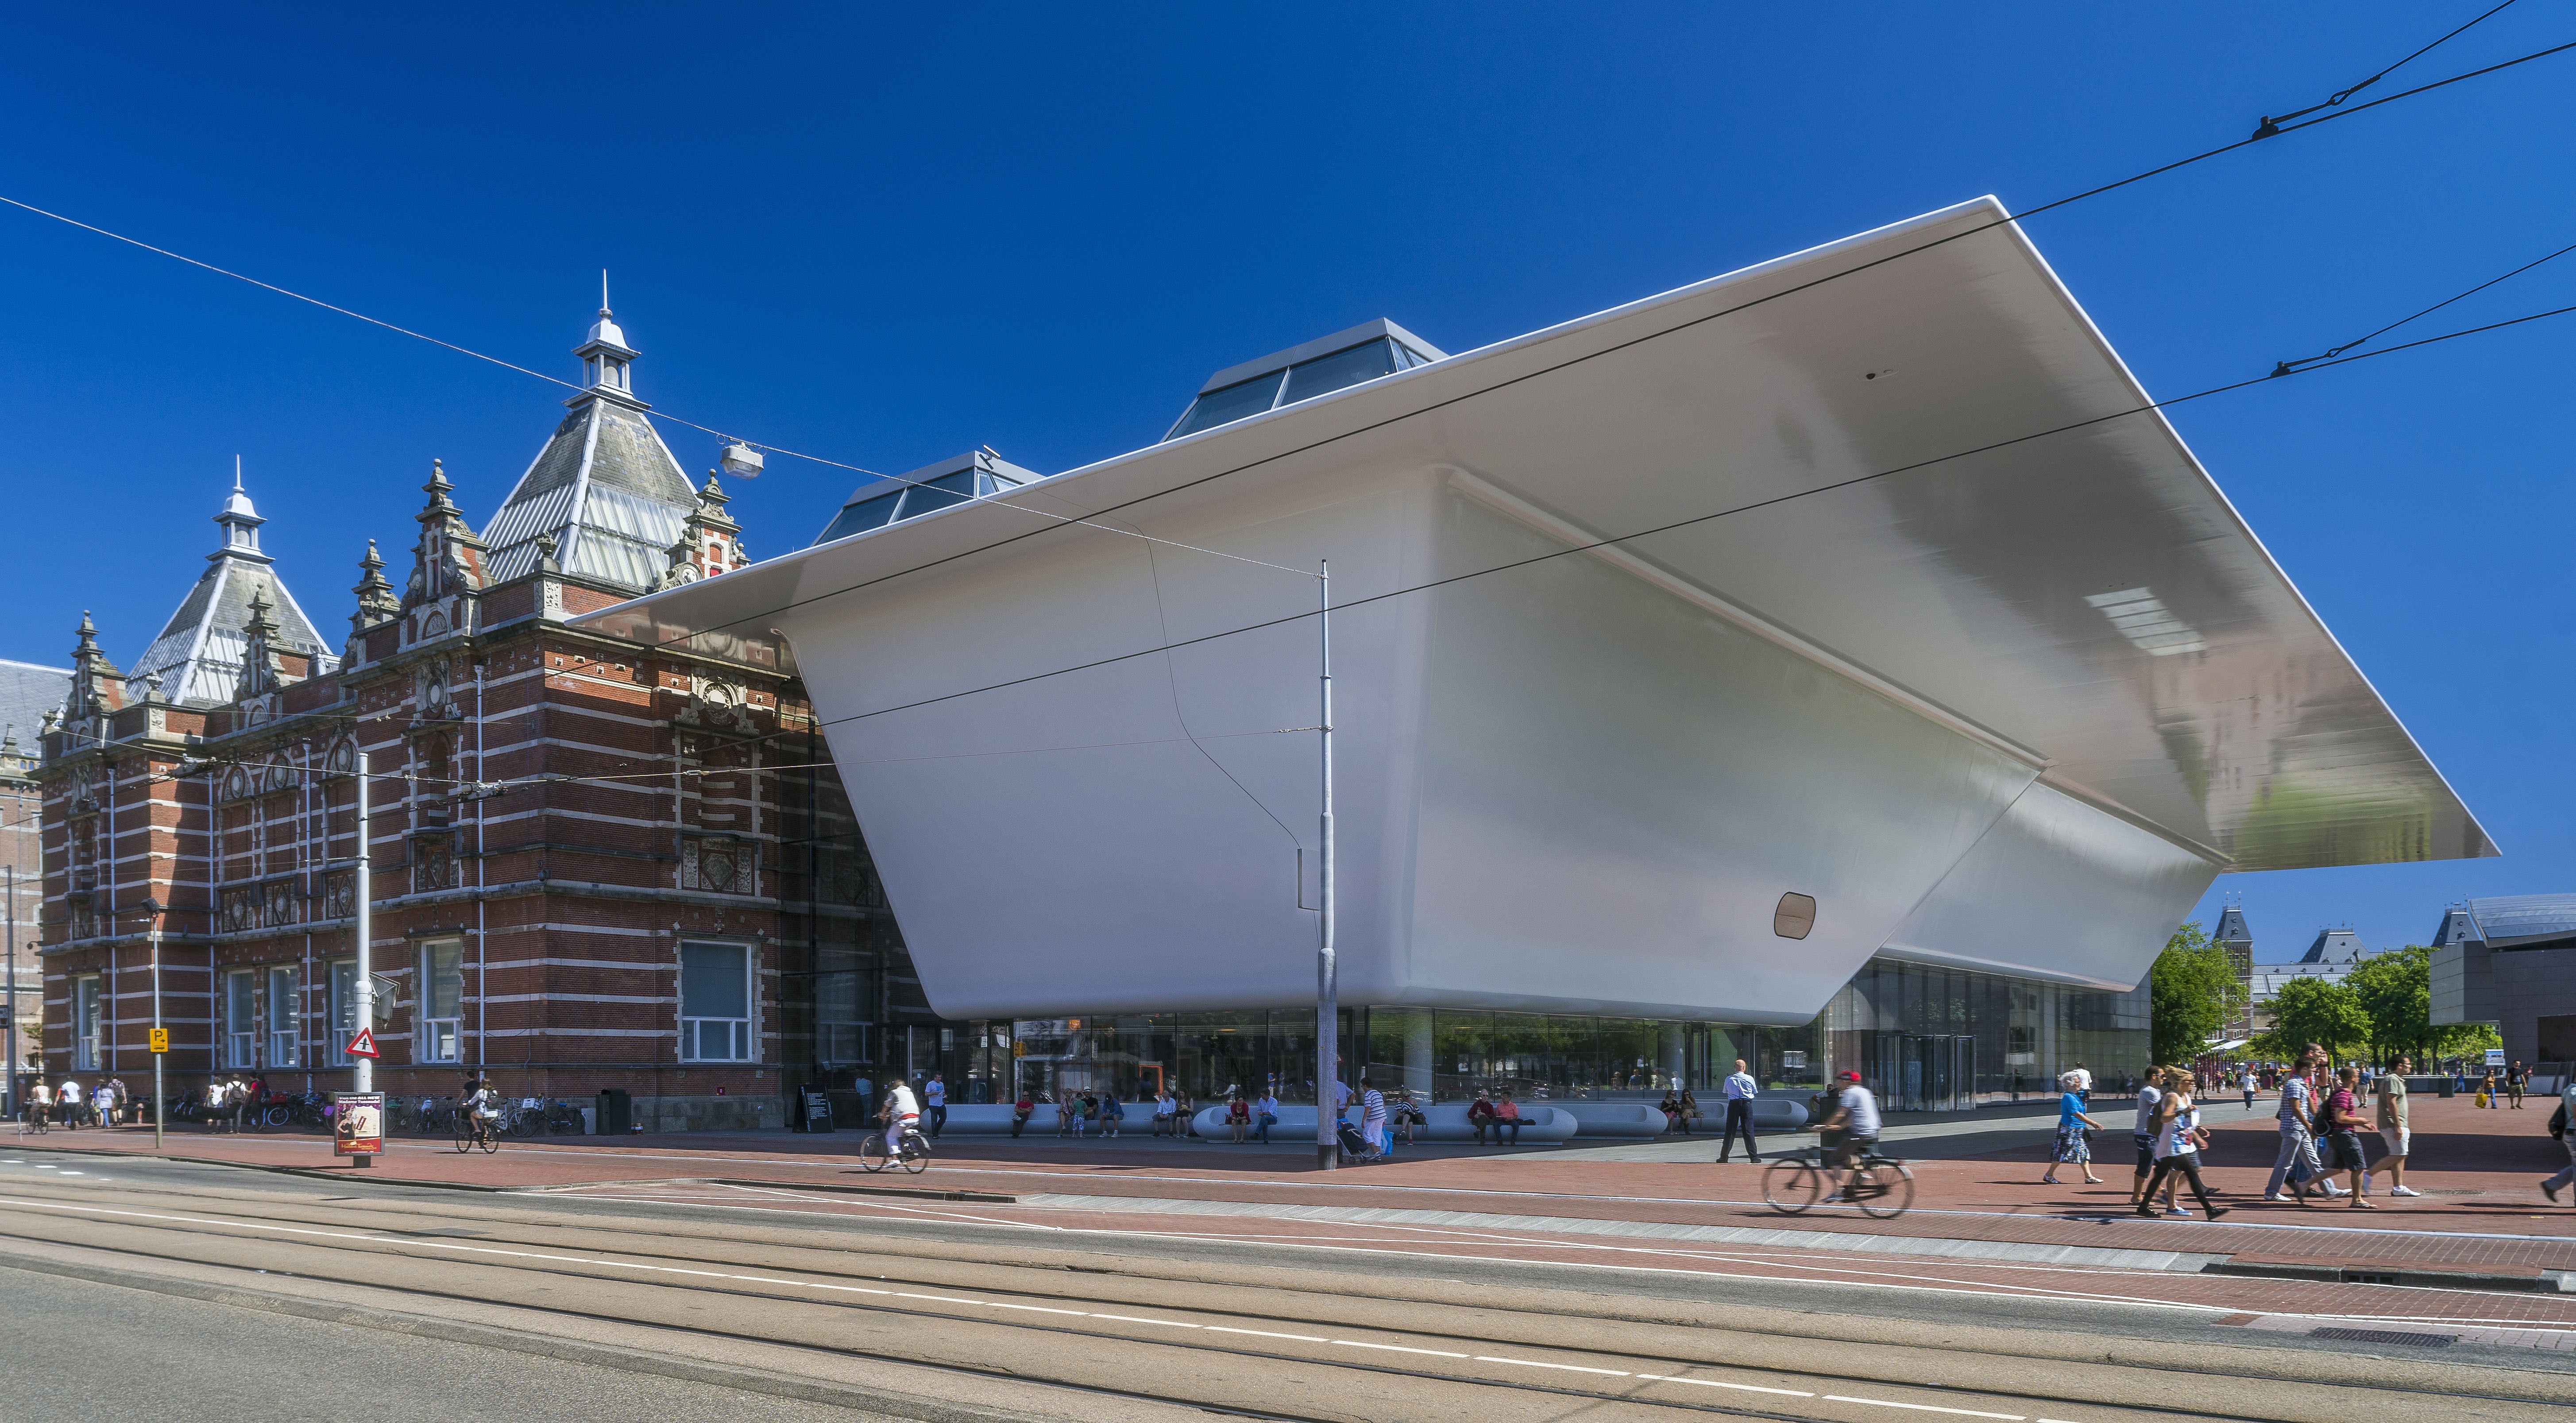 Новый городской музей. Музей Стеделейк Амстердам. Городской музей (Амстердам). Stedelijk Museum — Амстердам, Нидерланды. Музей современного искусства Амстердам.